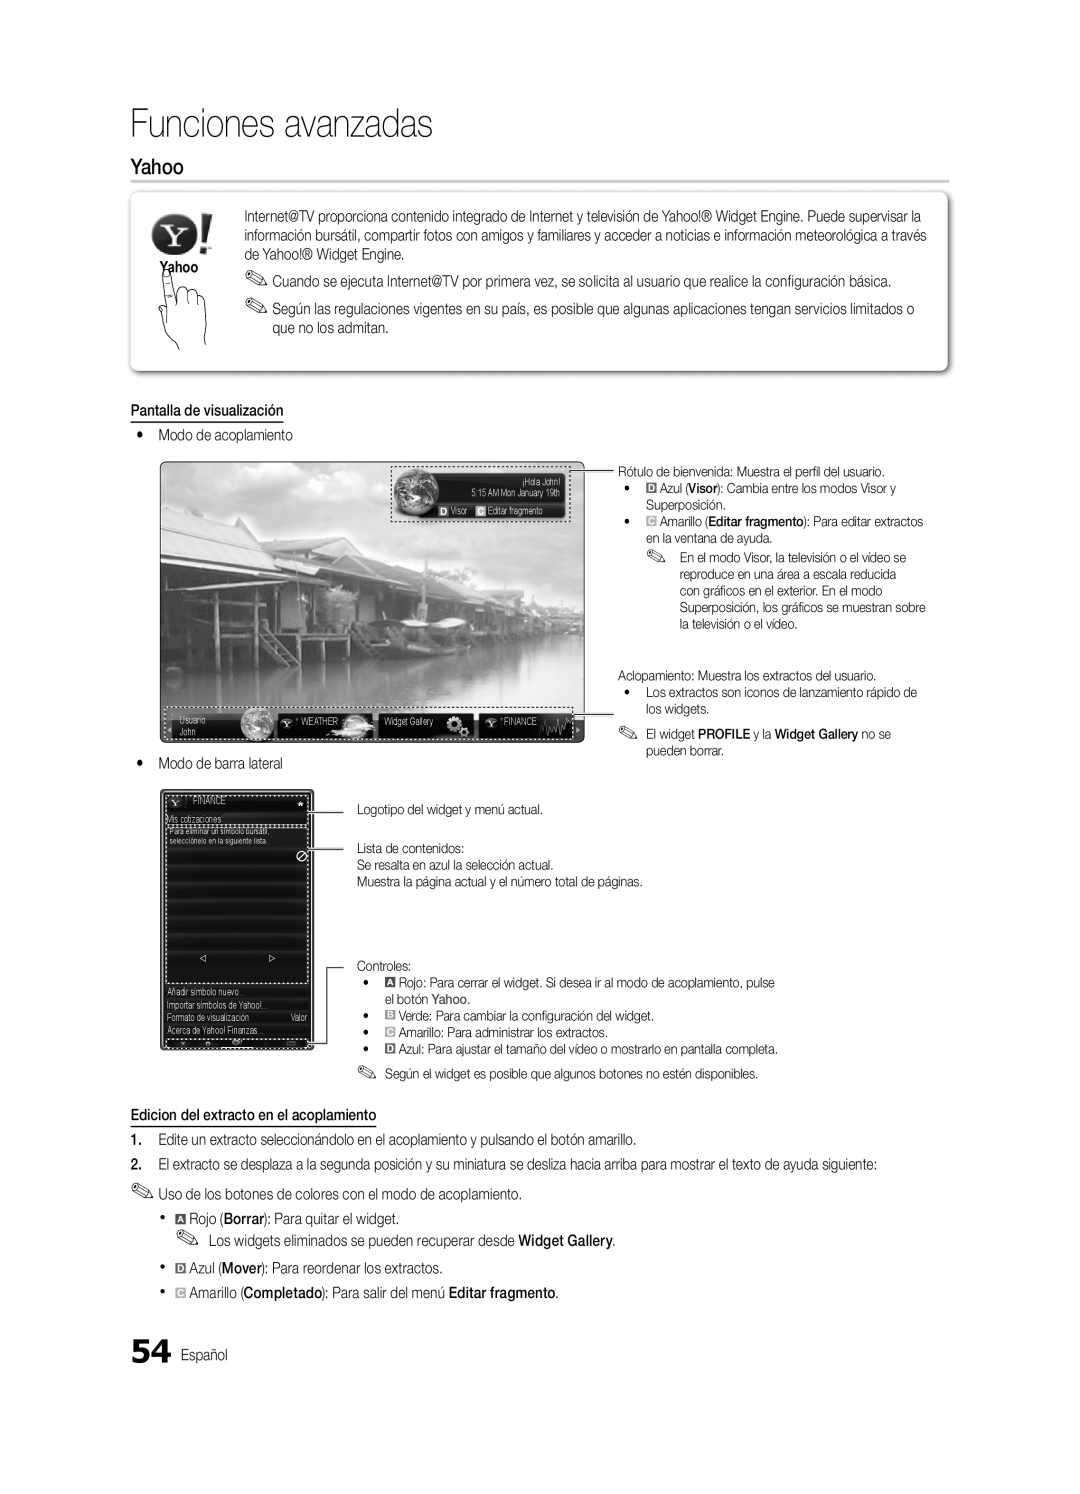 Samsung BN68-03088A-01, Series C9 user manual Funciones avanzadas, Yahoo, Pantalla de visualización y Modo de acoplamiento 